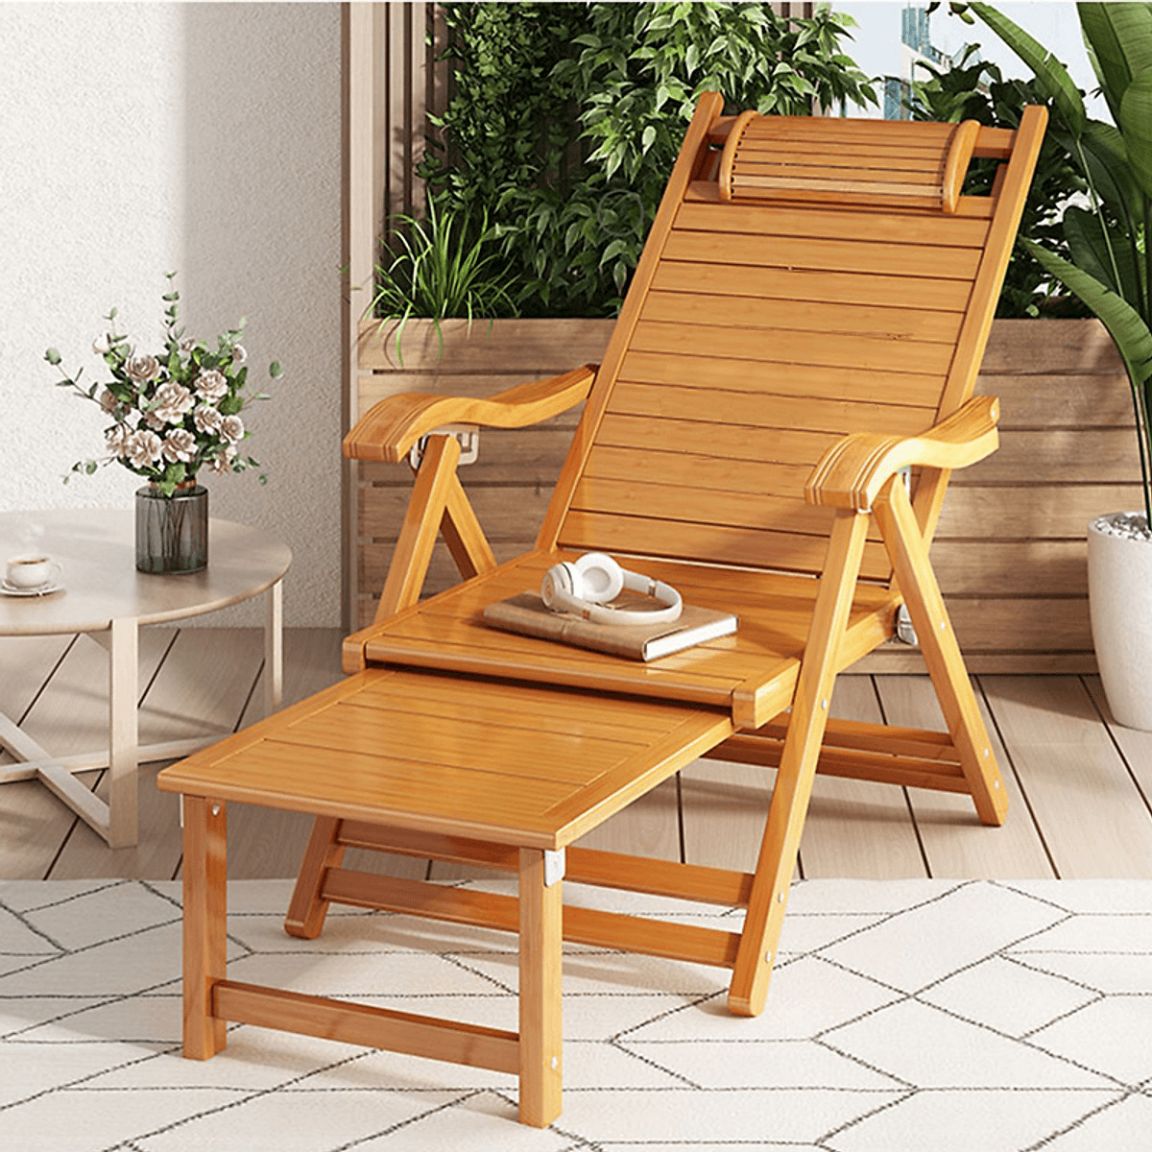 Thiết kế ghế thư giãn gỗ sang trọng được làm từ gỗ hương